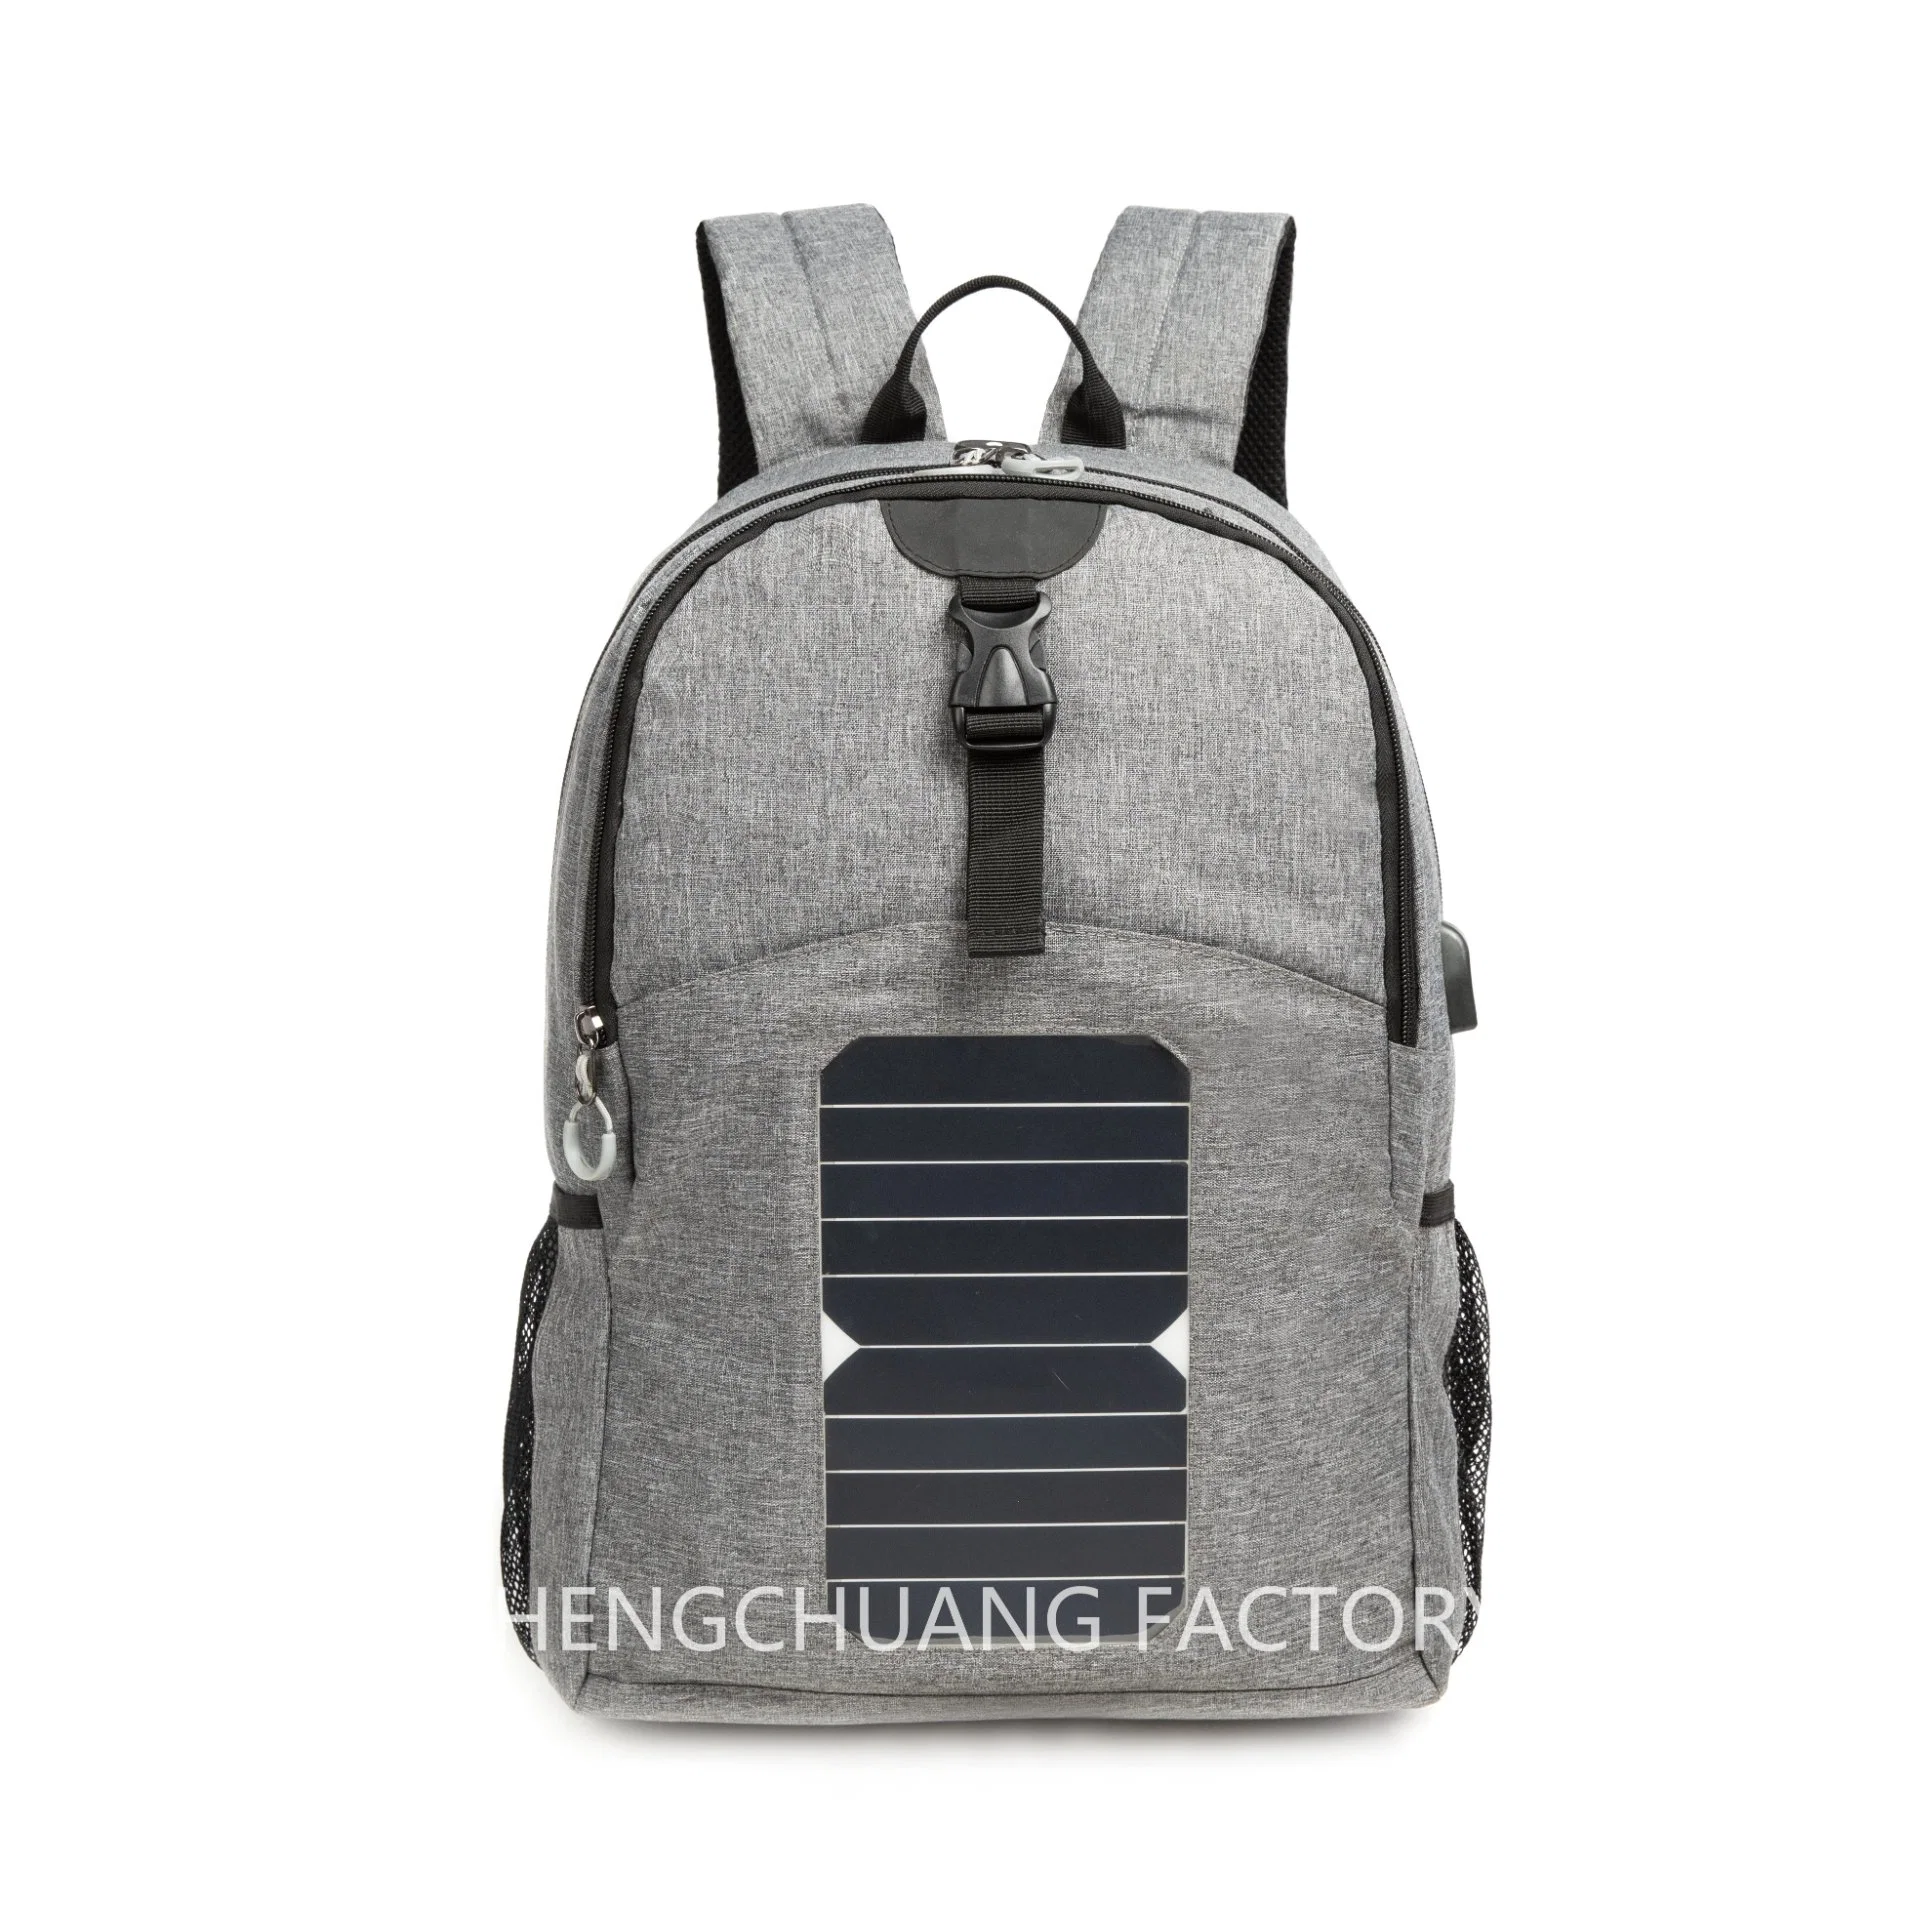 High Tech мужчин солнечной рюкзак Smart сумку для использования вне помещений солнечная батарея аккумуляторная батарея питания рюкзак с зарядкой через USB порт